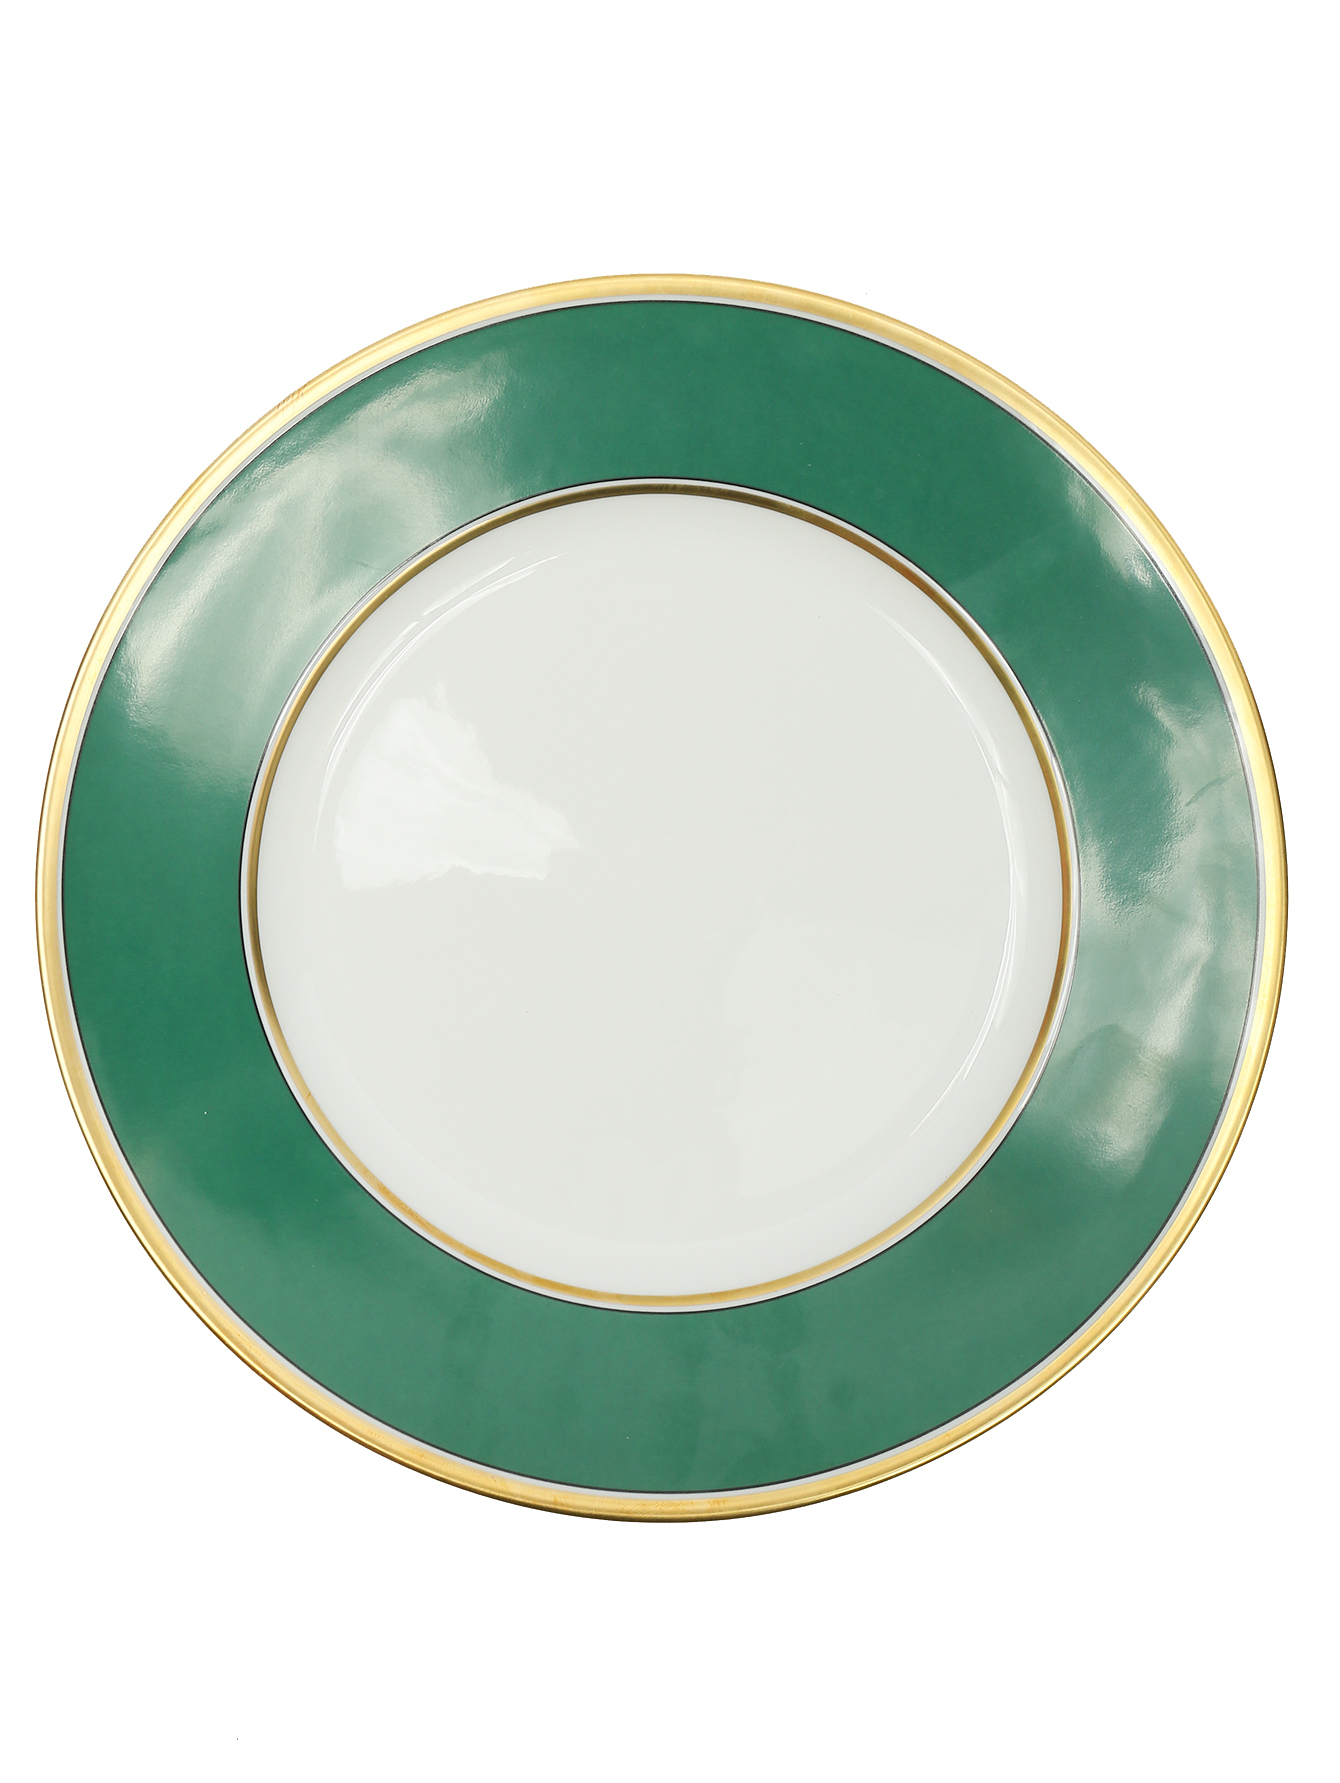 Каемка тарелки. Тарелка Джинори 1735 зеленая. Джинори 1735 зеленая. Richard Ginori 1735 сервиз. Тарелка с зеленой каймой.